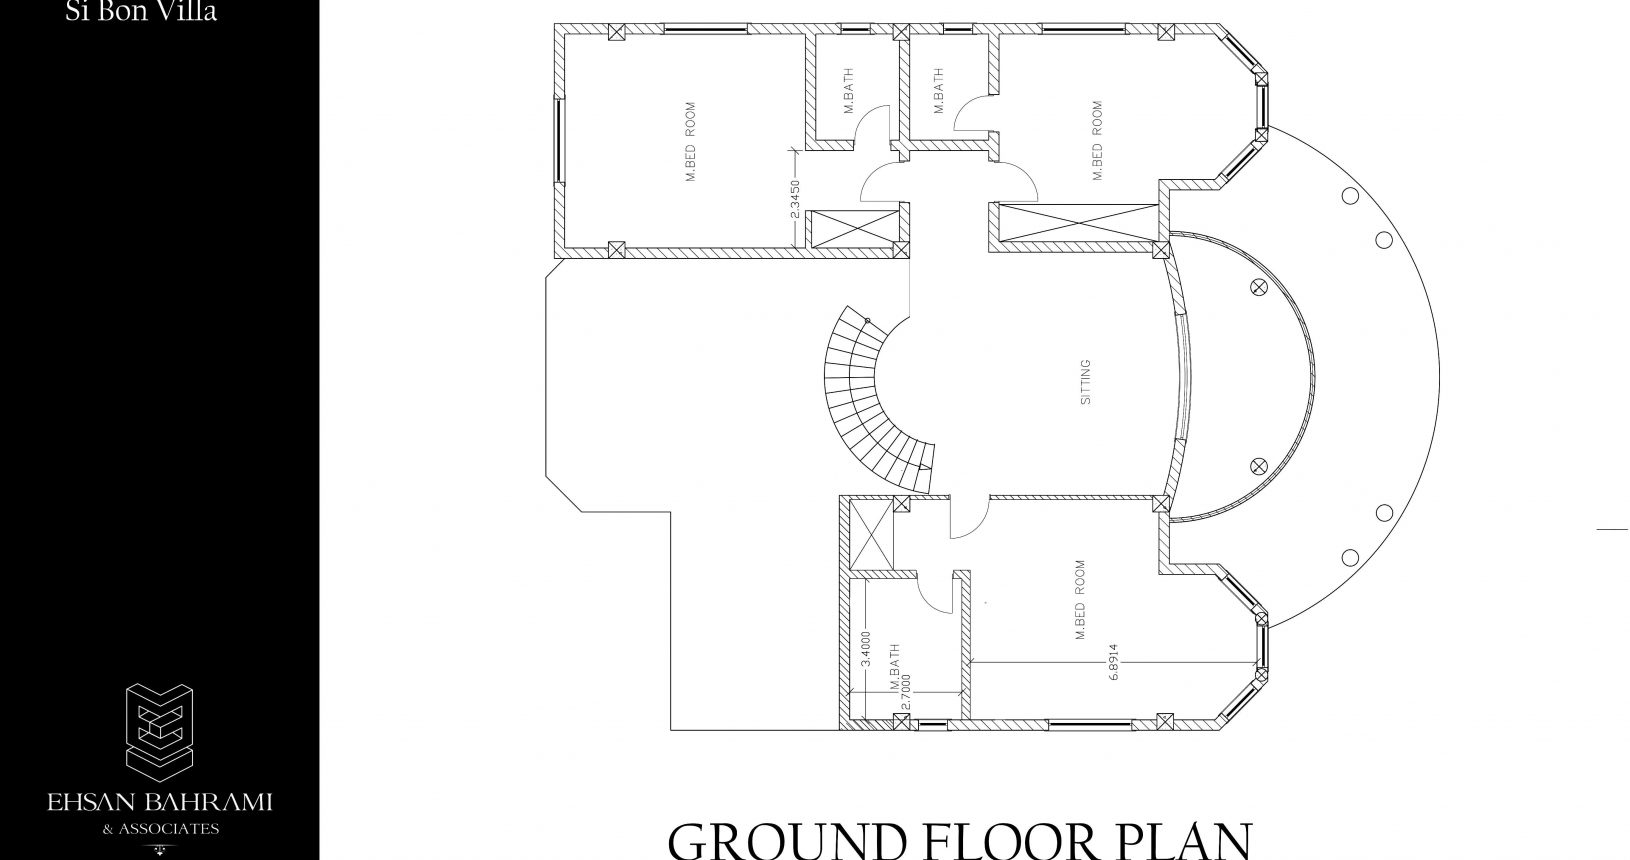 Sibon Villa ground floor plan